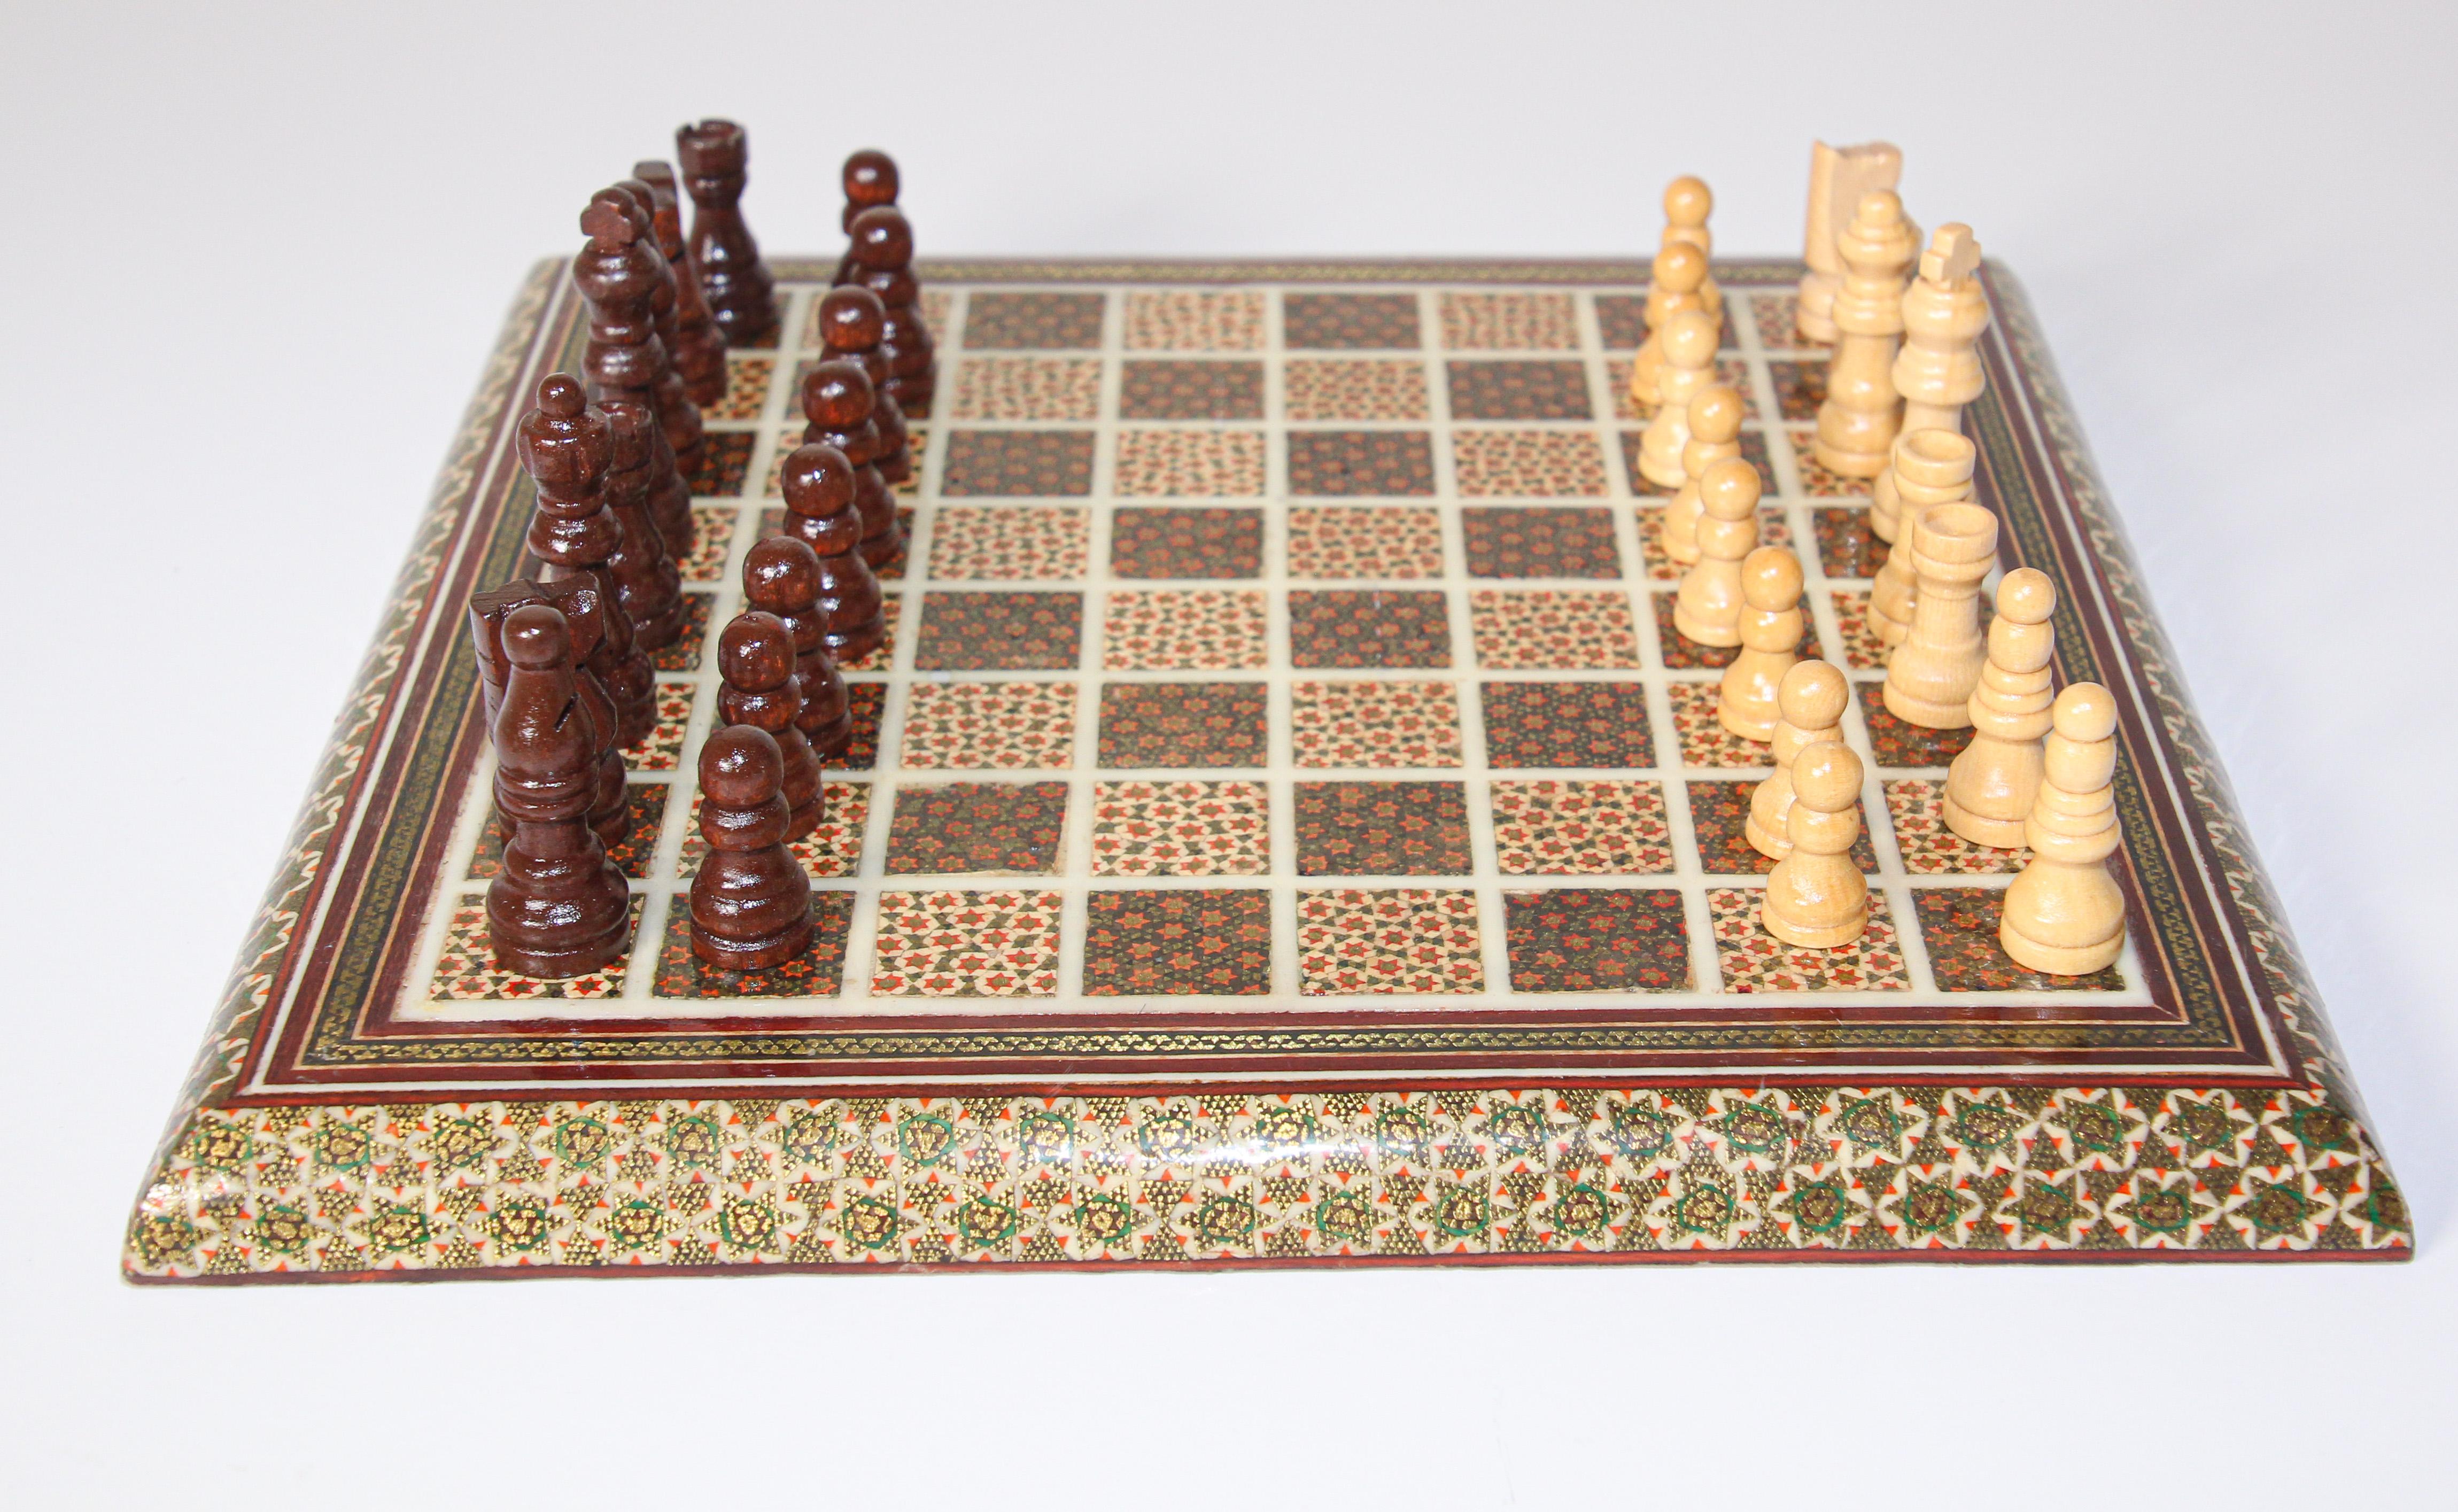 iranian chess set